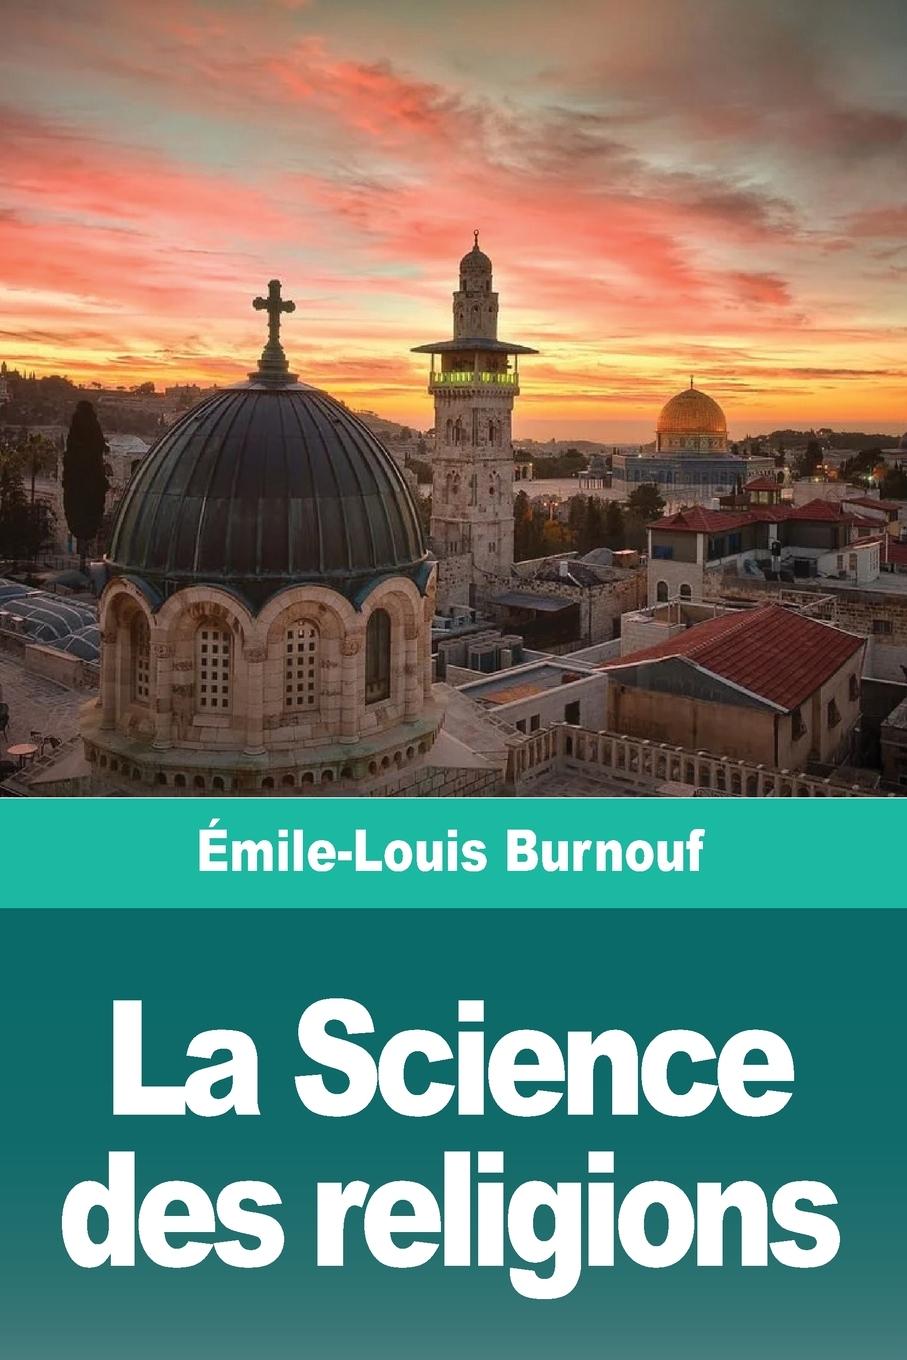 Book La Science des religions 